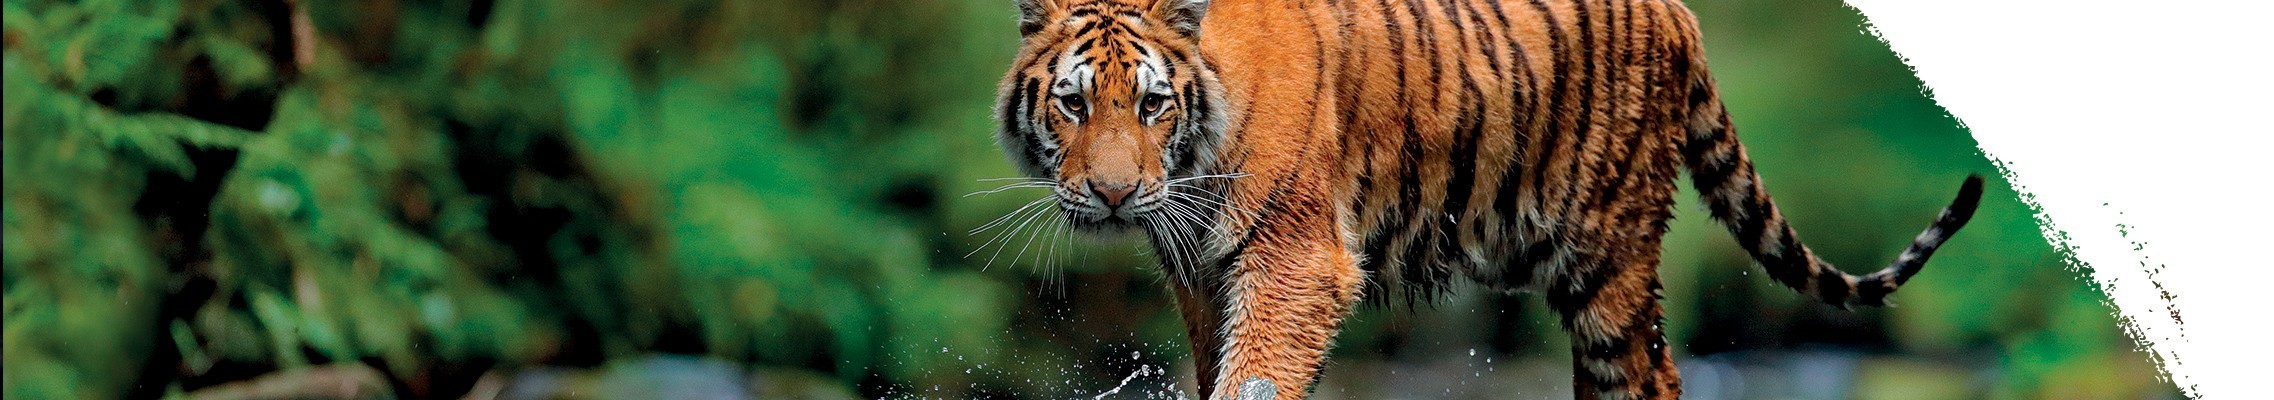 Tiger džungľový